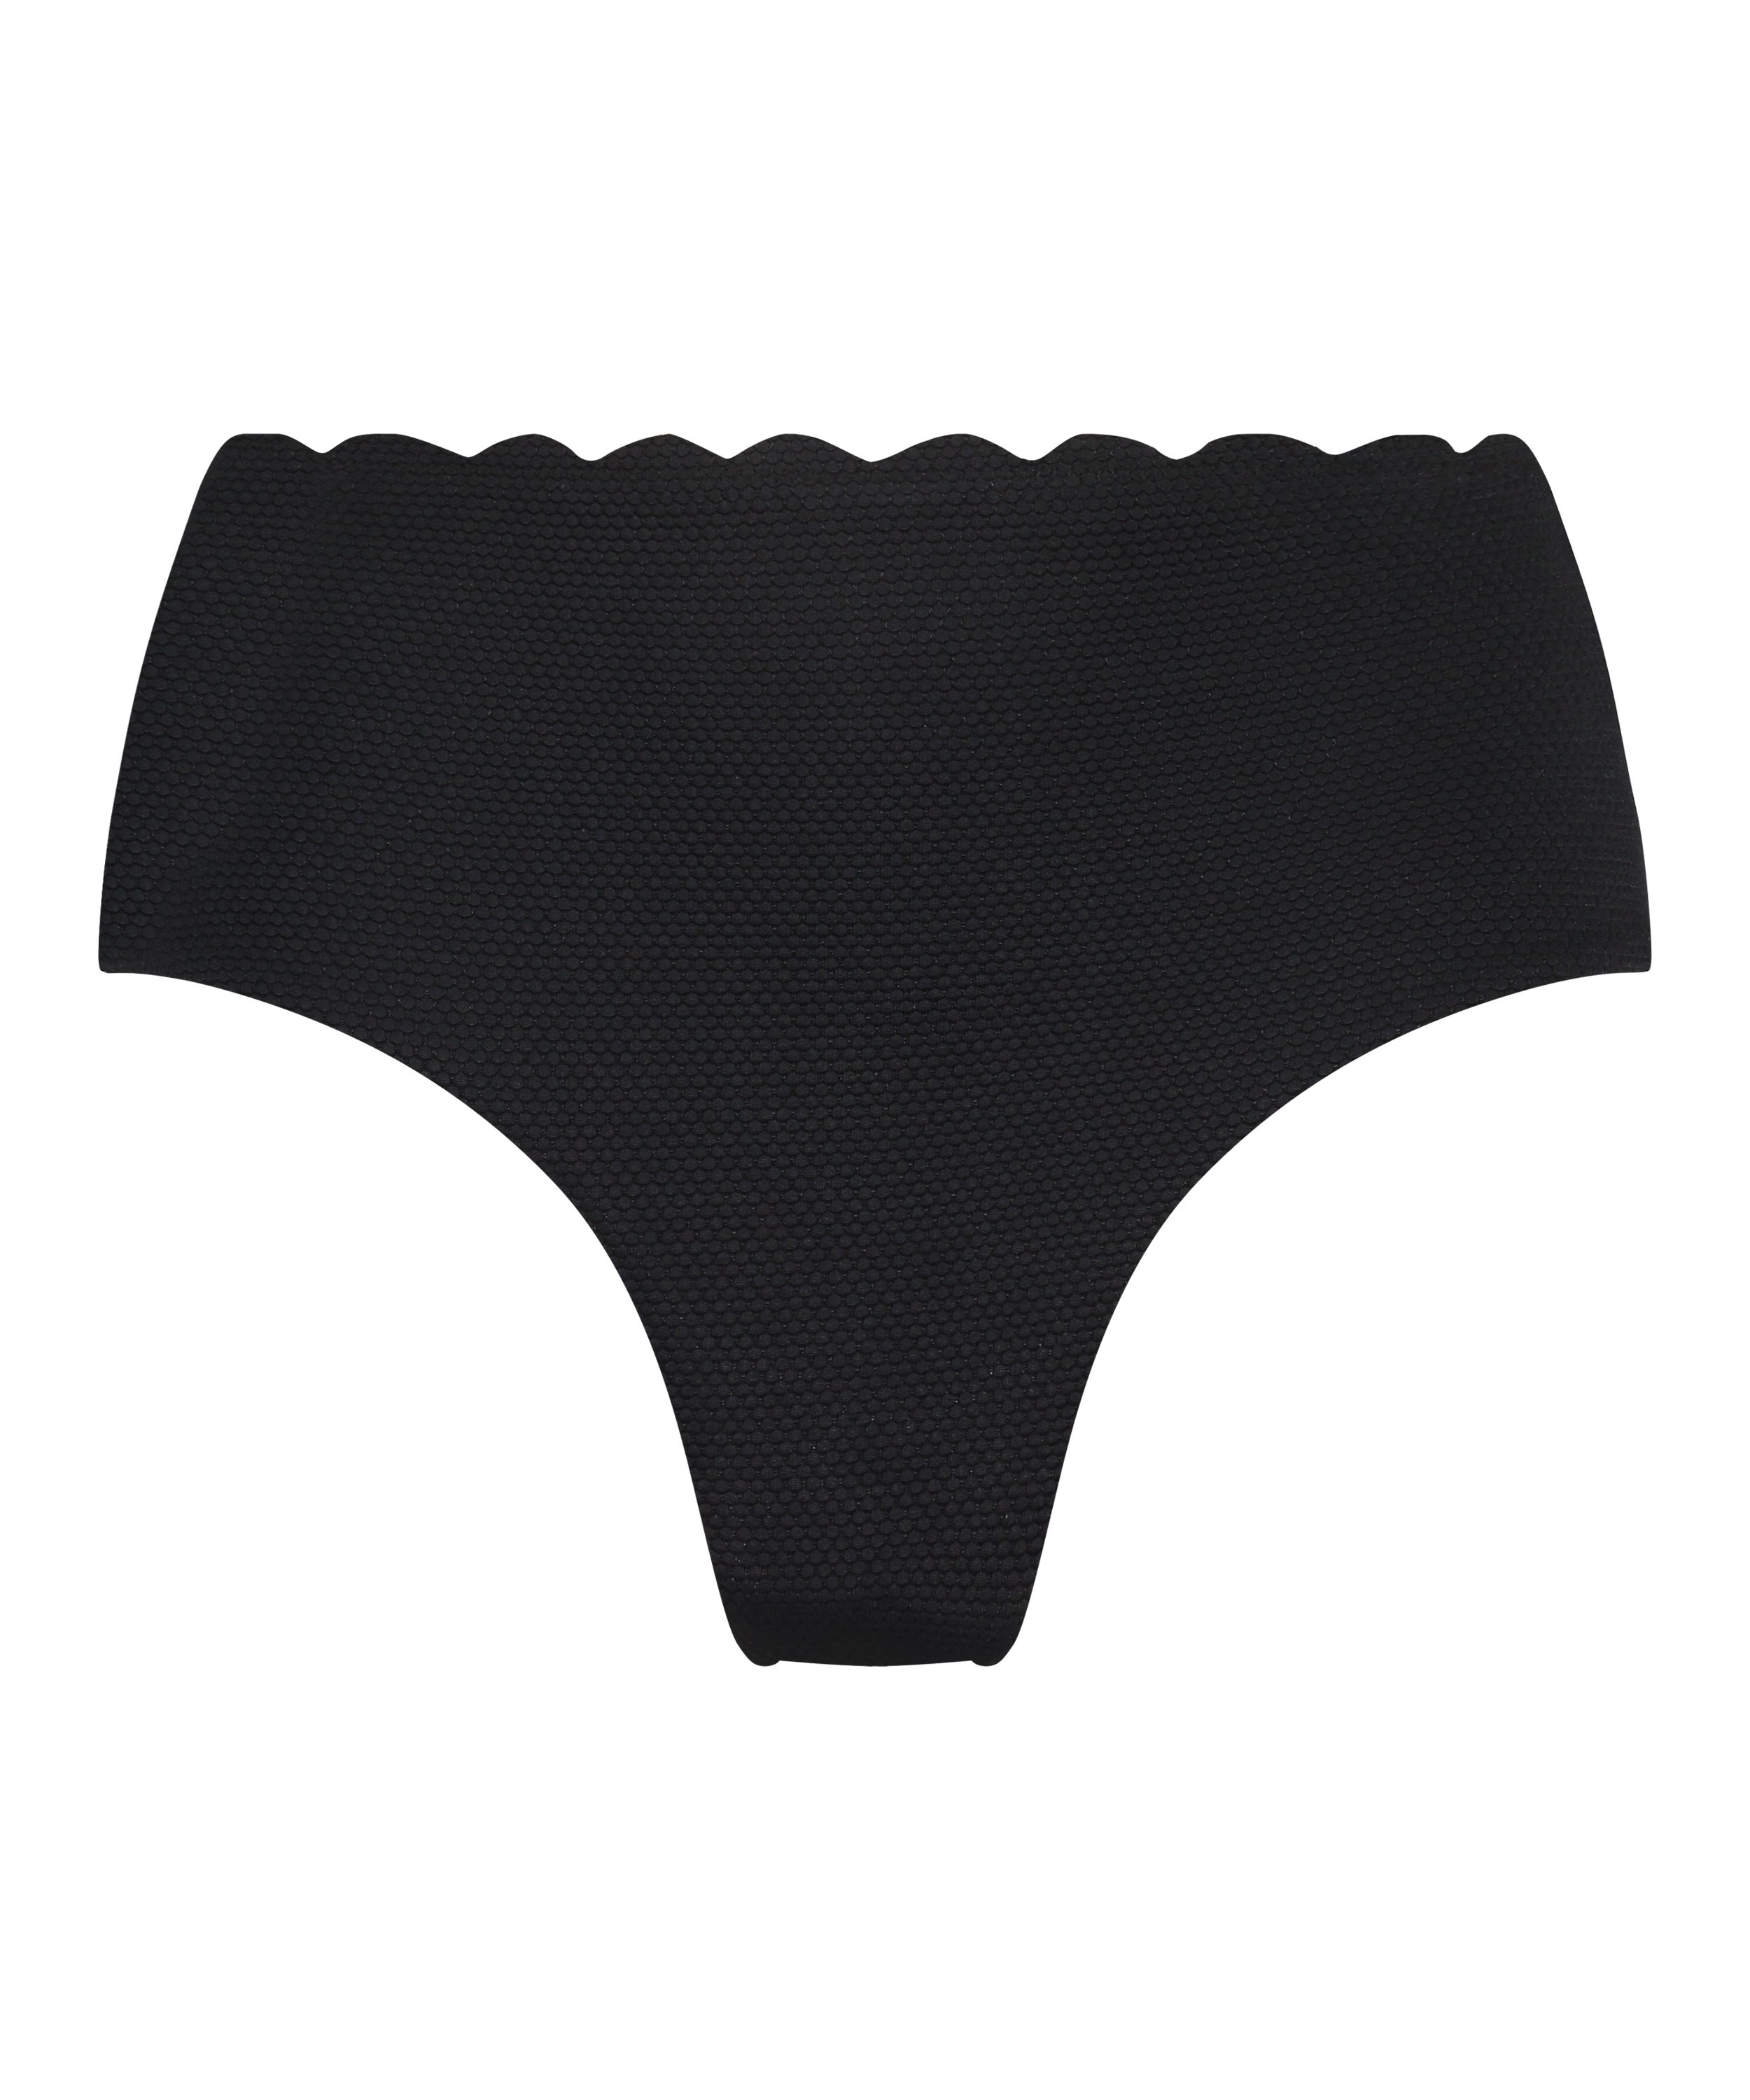 High-cut Scallop bikini bottoms, Black, main